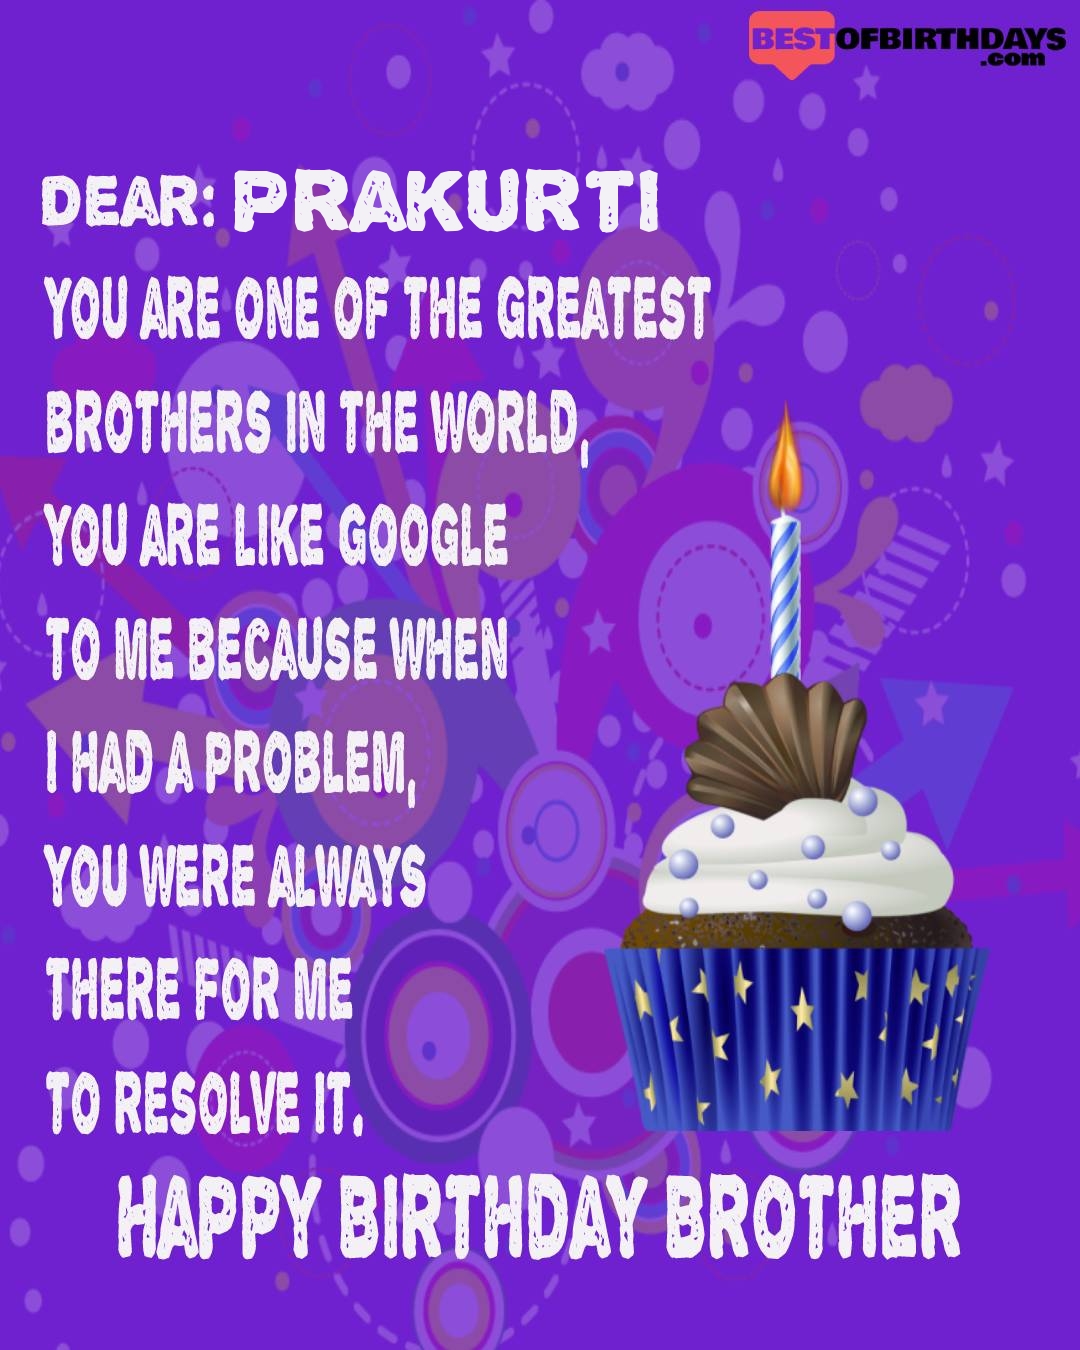 Happy birthday prakurti bhai brother bro